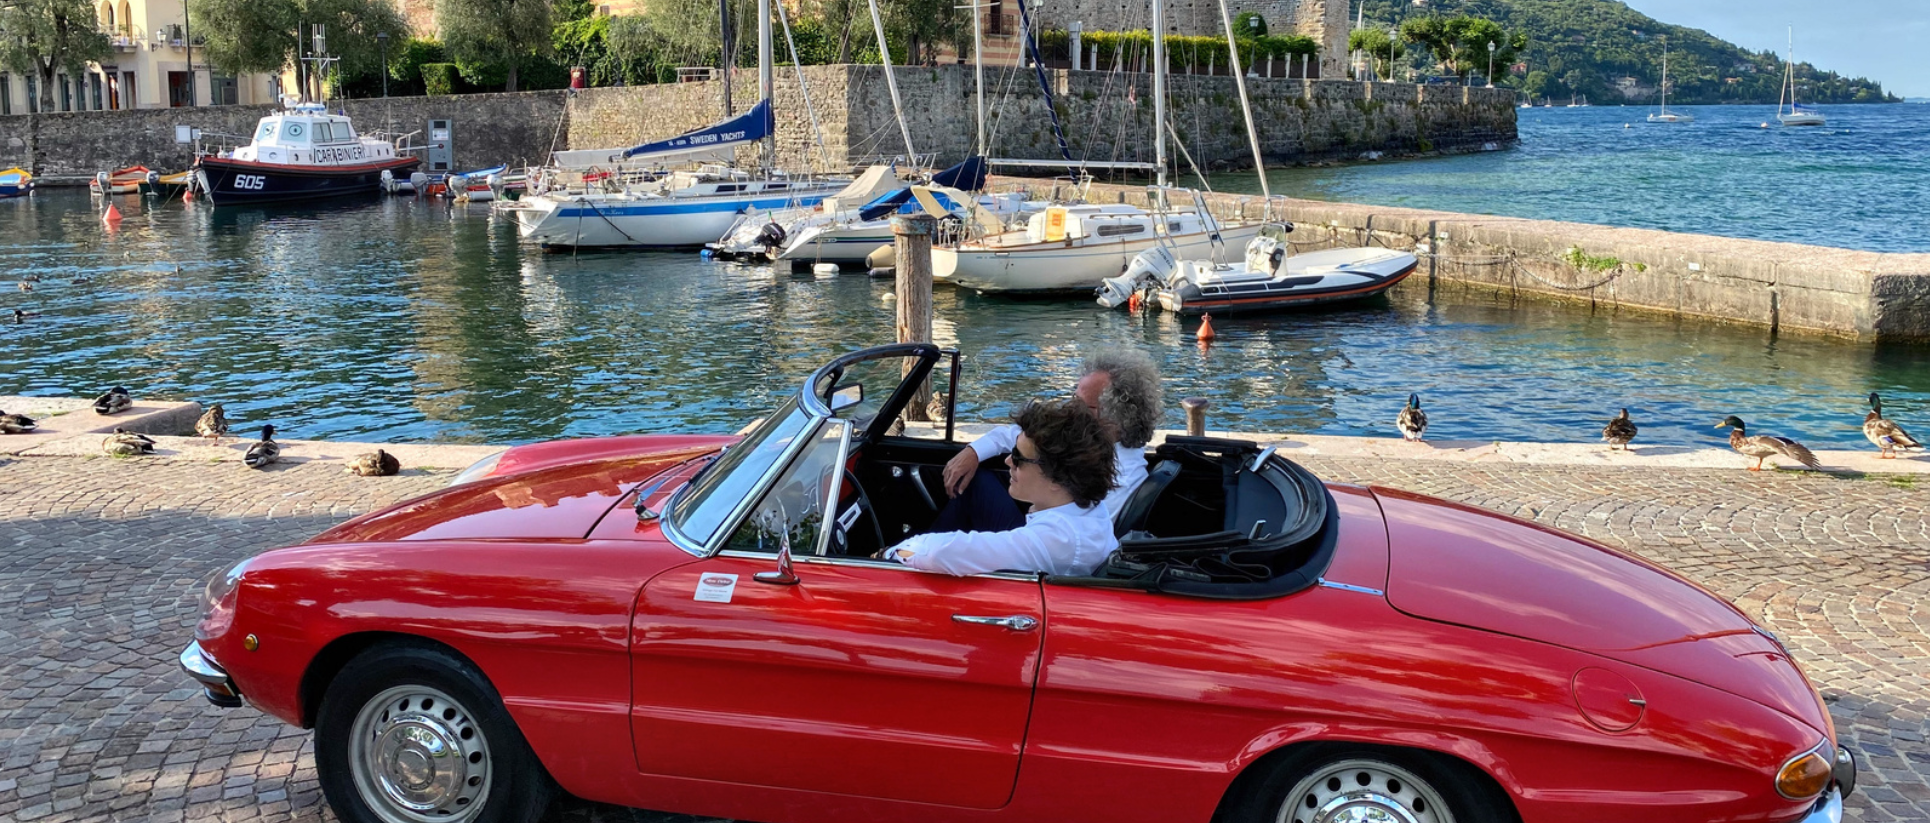 Tour in auto d’epoca - lago di Garda - vintage car experience - Garda E-motion